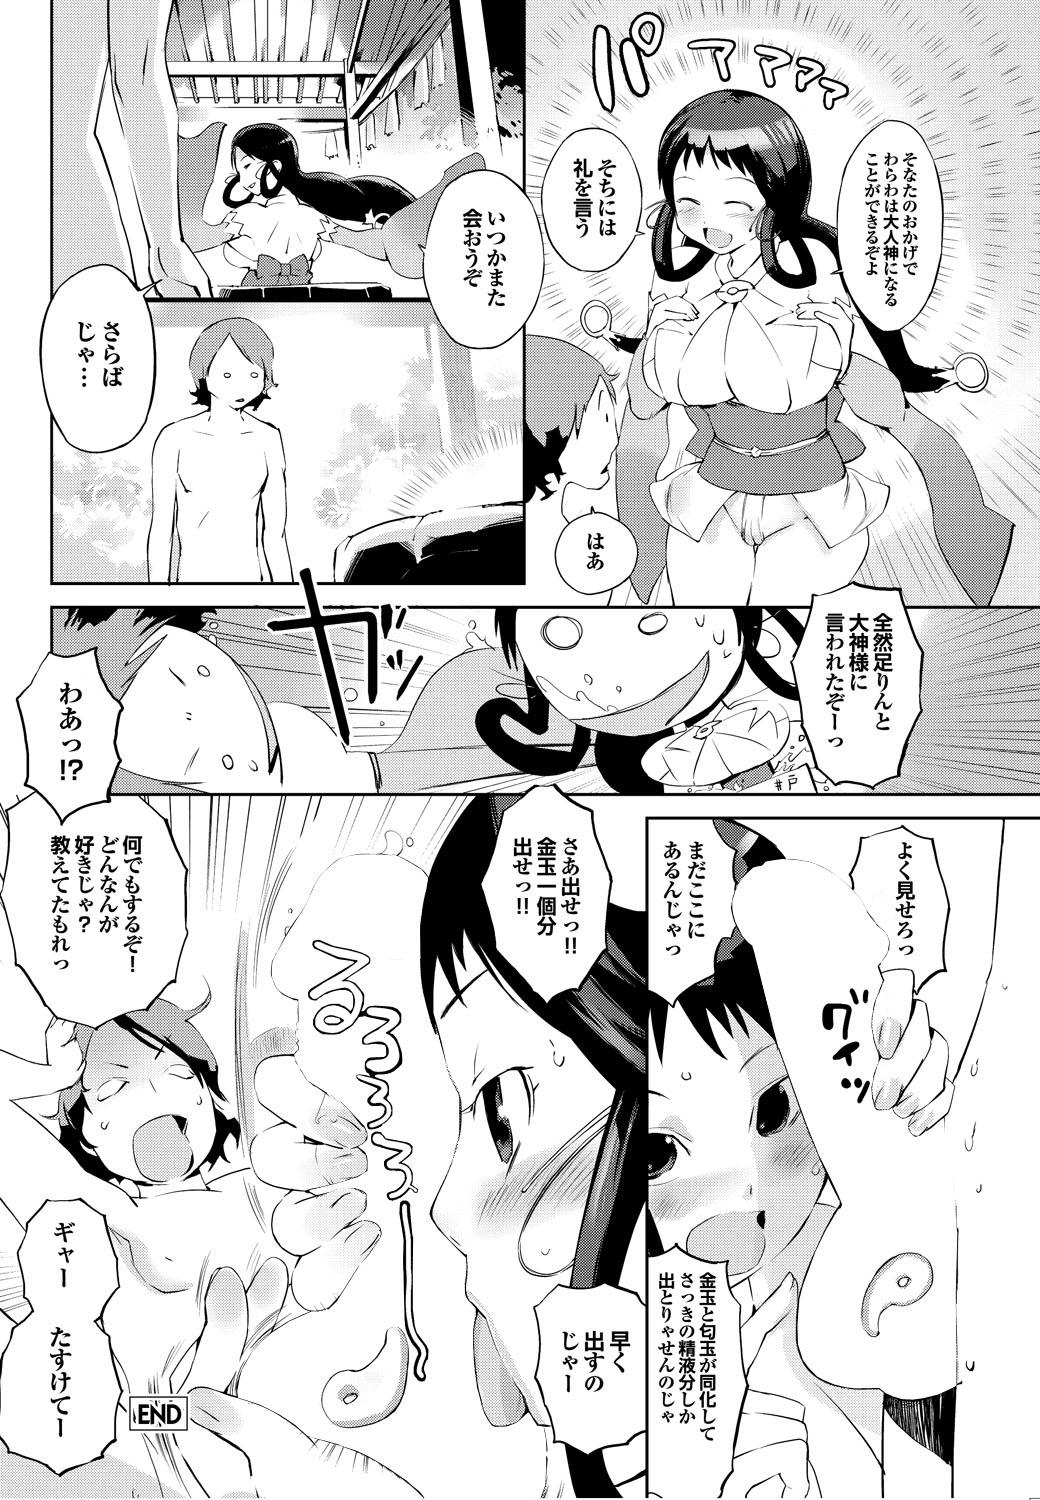 3some Shinsatsu Mari Sensei Caught - Page 159